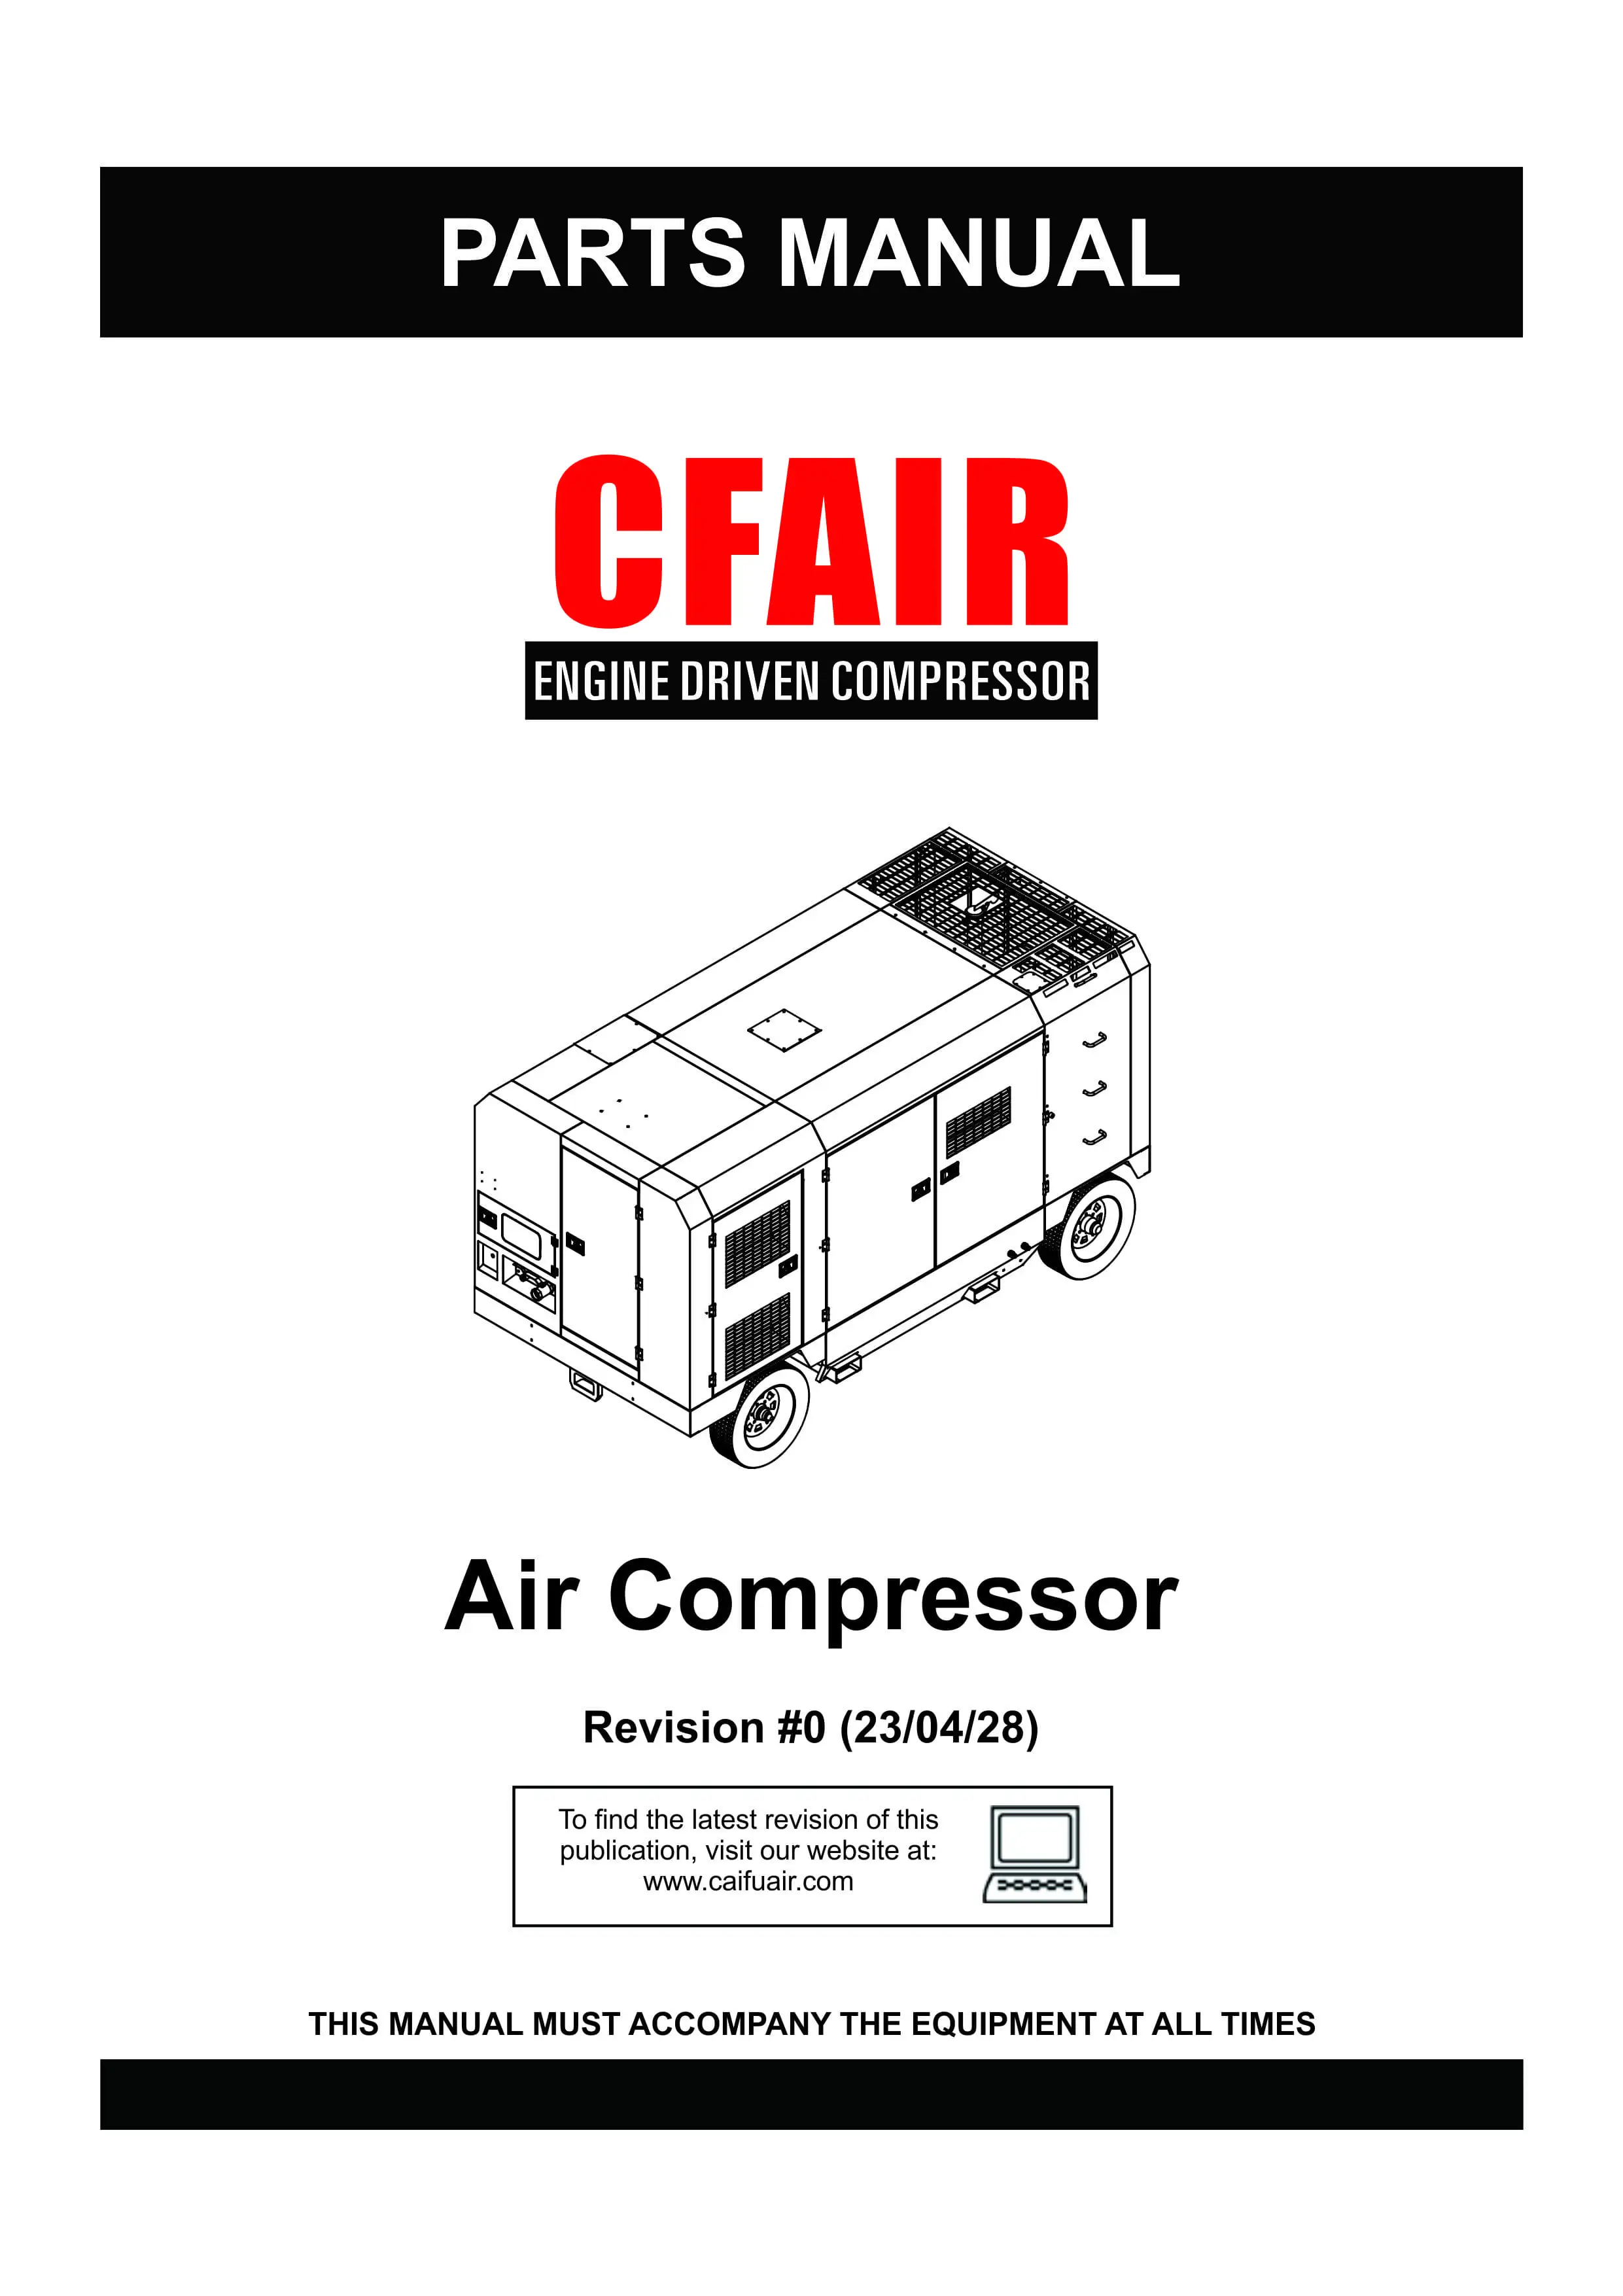 PARTS MANUAL-HIGH PRESSURE AIR COMPRESSOR